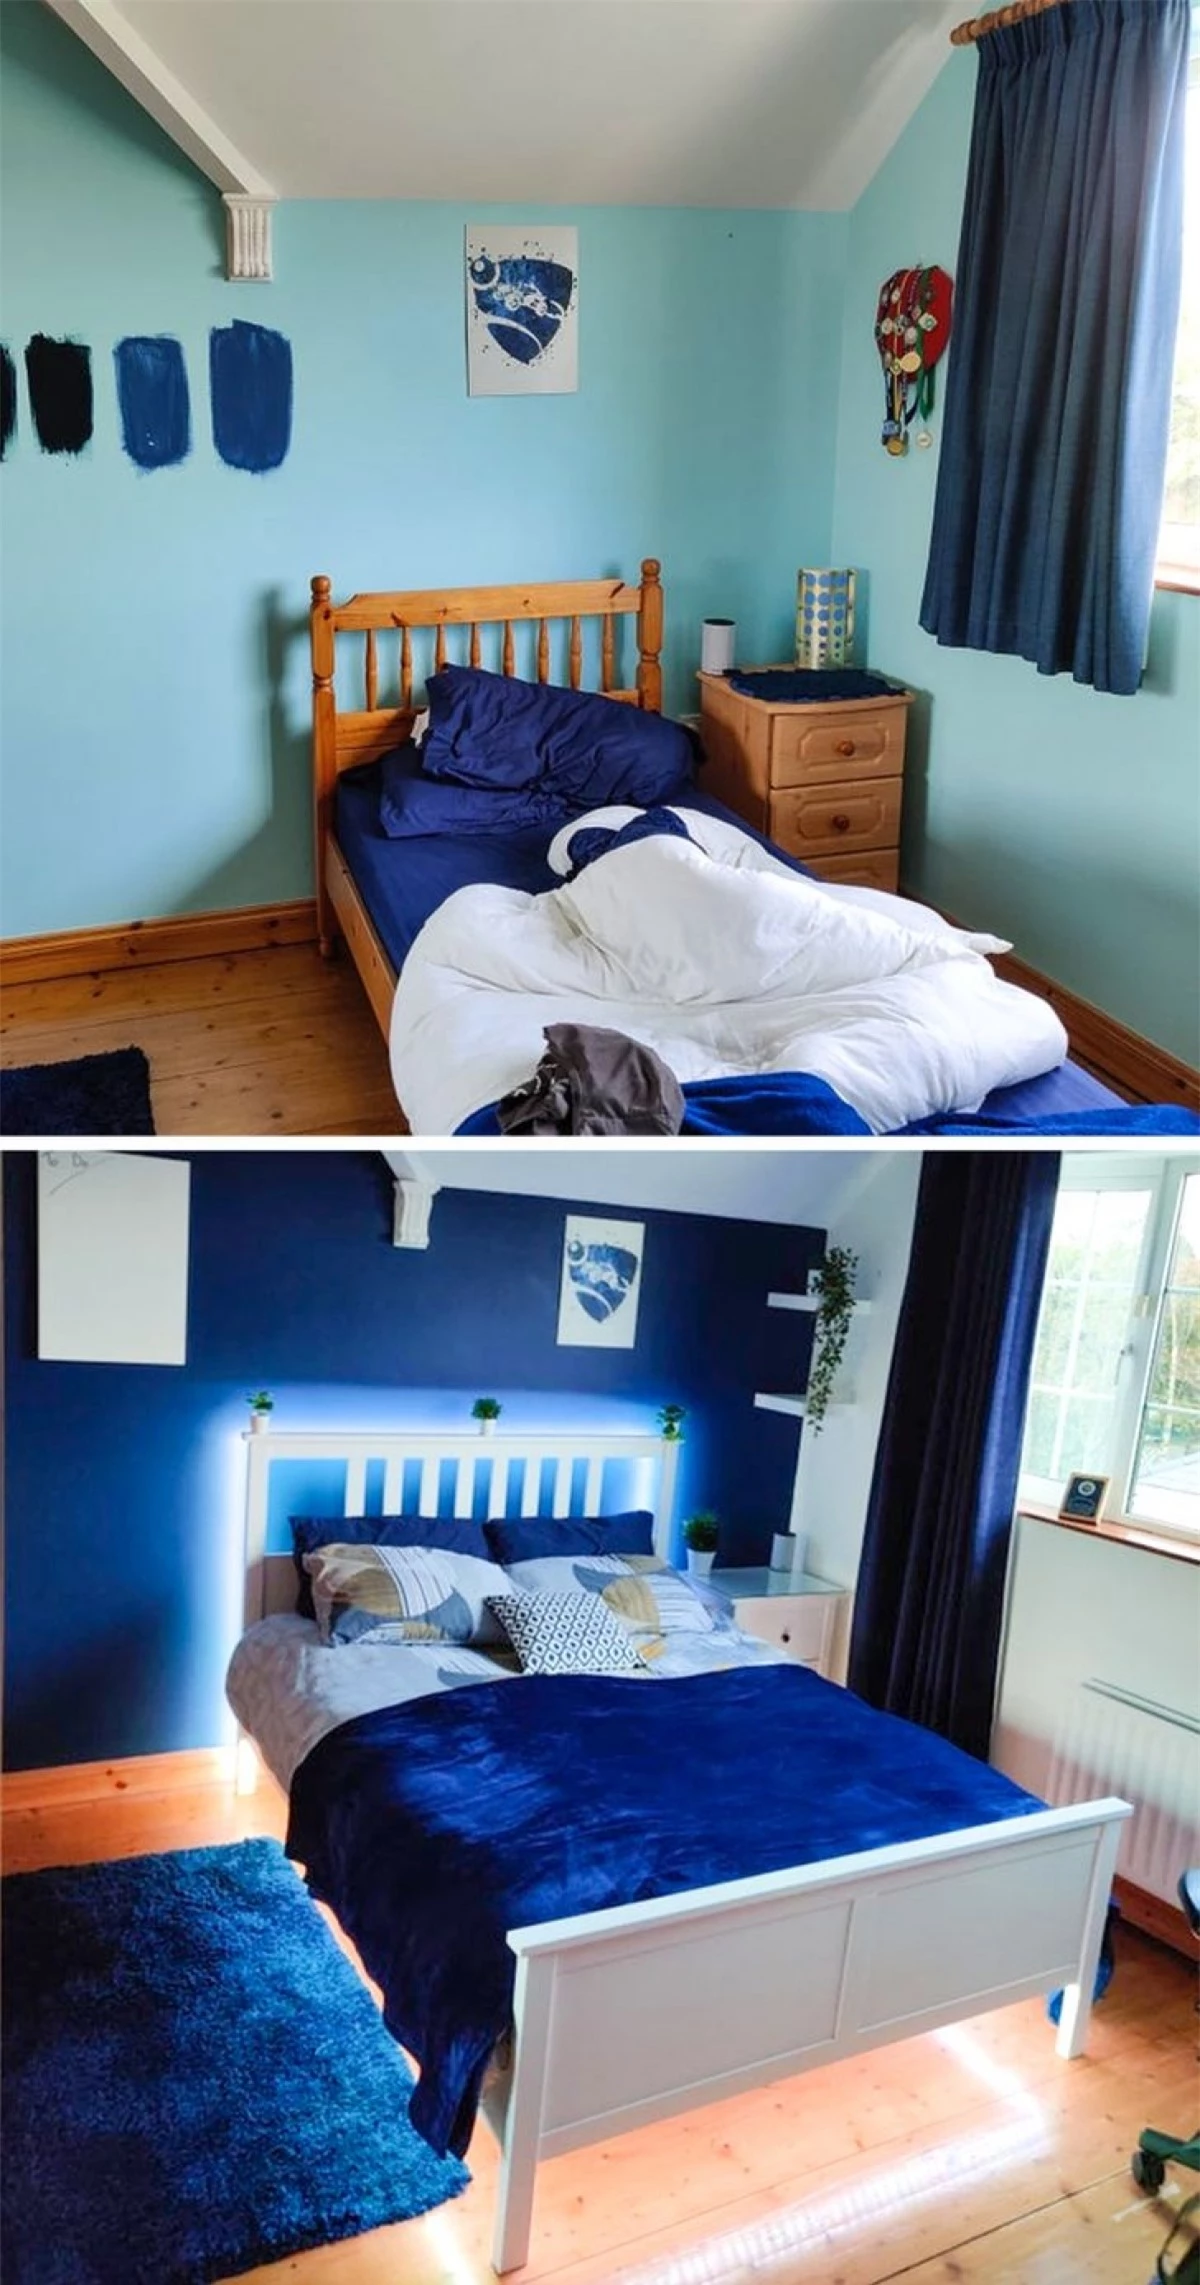 Phòng ngủ trước và sau quá khác biệt nhờ ý tưởng thông minh và sáng tạo./.